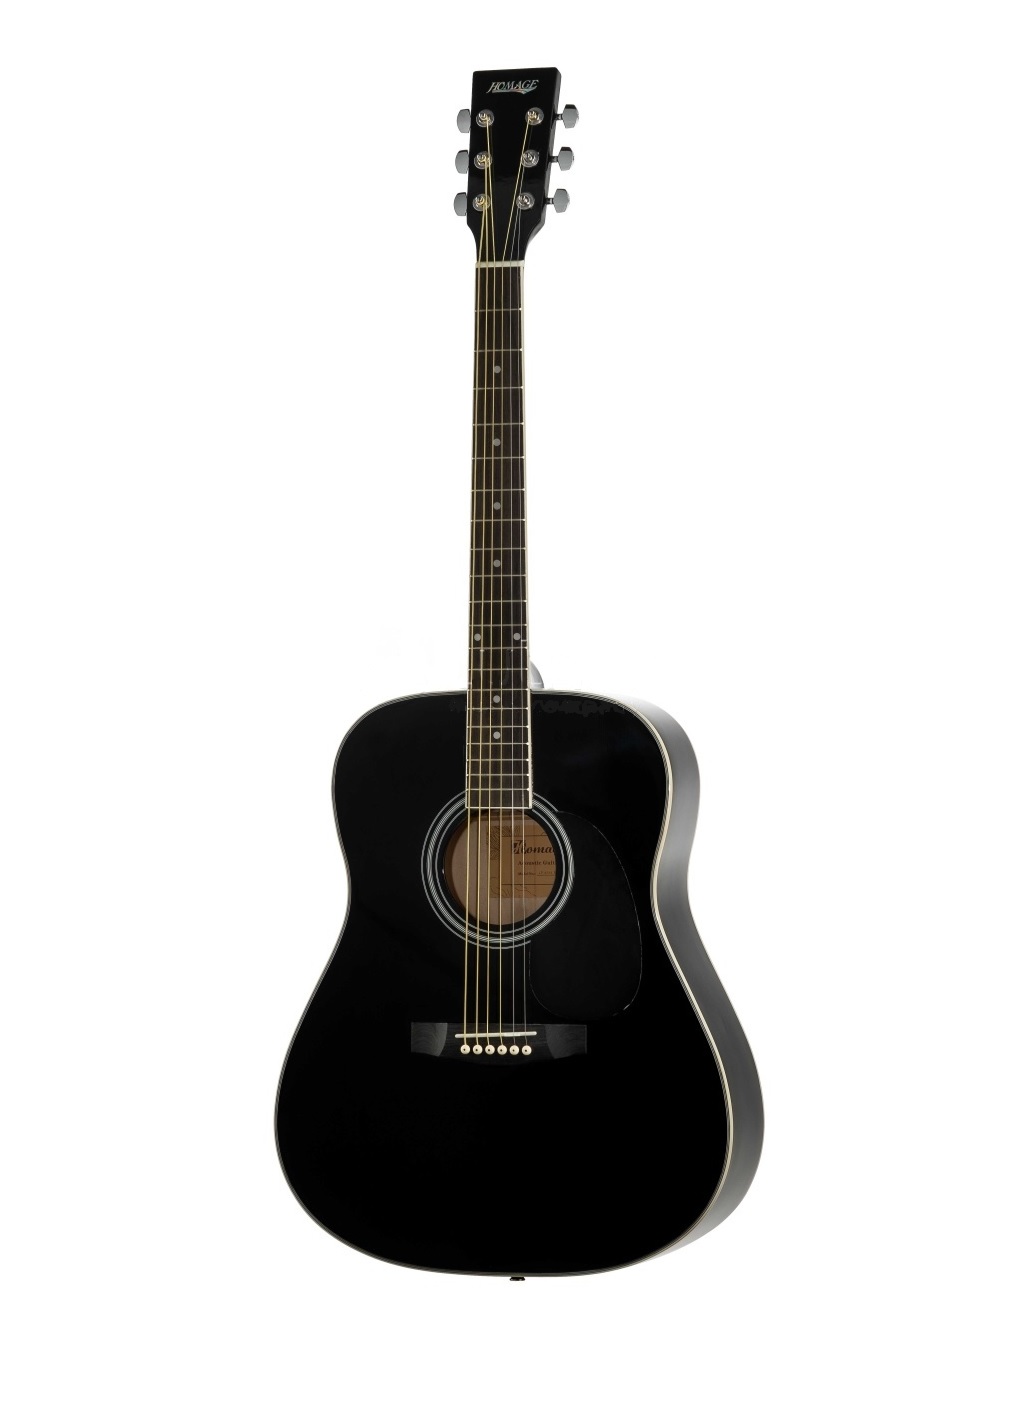 Акустические гитары Homage LF-4111-BK акустические гитары mirra wg 4111 bk